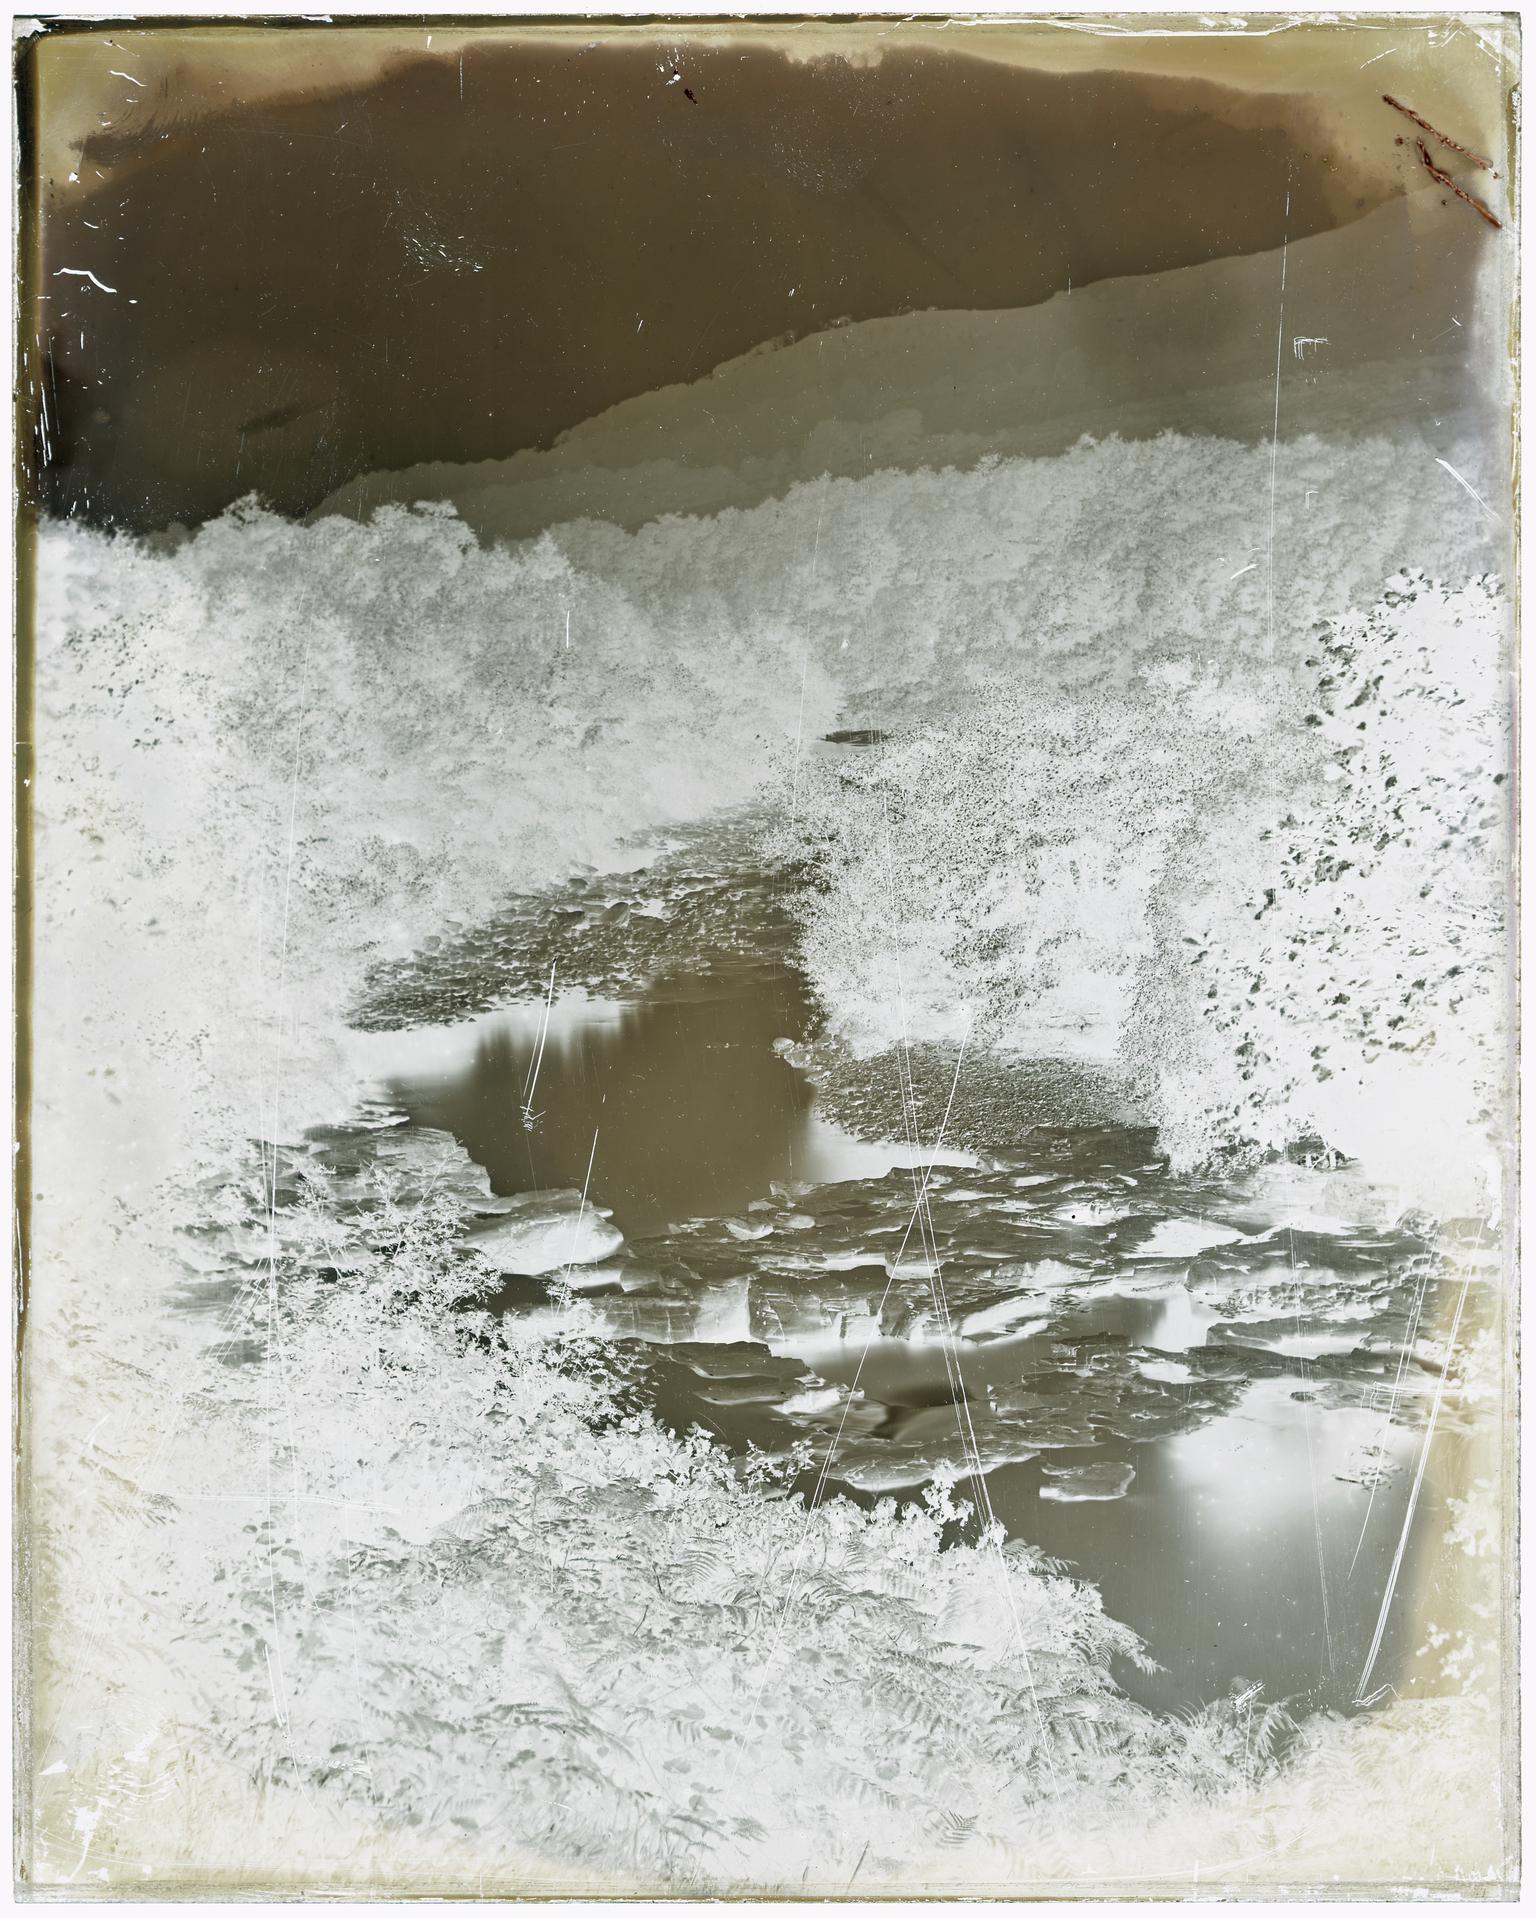 River Dulais, glass negative